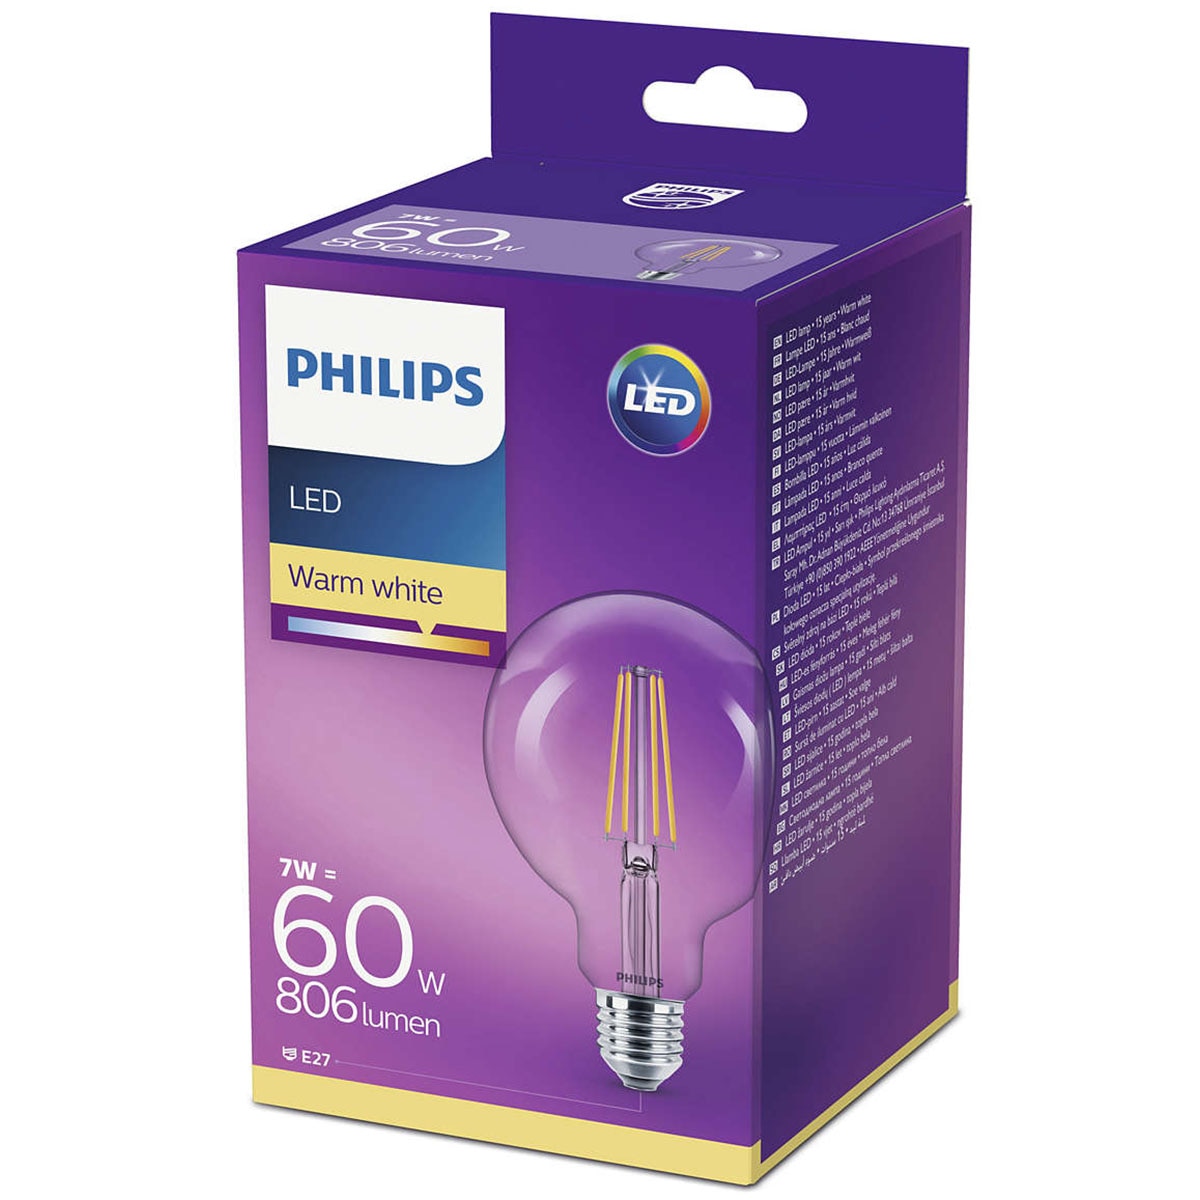 Светодиодная лампа Philips Classic e27 2700 к 806 лм. Лампа светодиодная Philips LEDCLASSIC 3000k, e27, g93, 6вт. Philips Global. Philips 2x led warm White 2700k 8w= 60w Philips Philips 806 Lumens. Филипс 60 отзывы